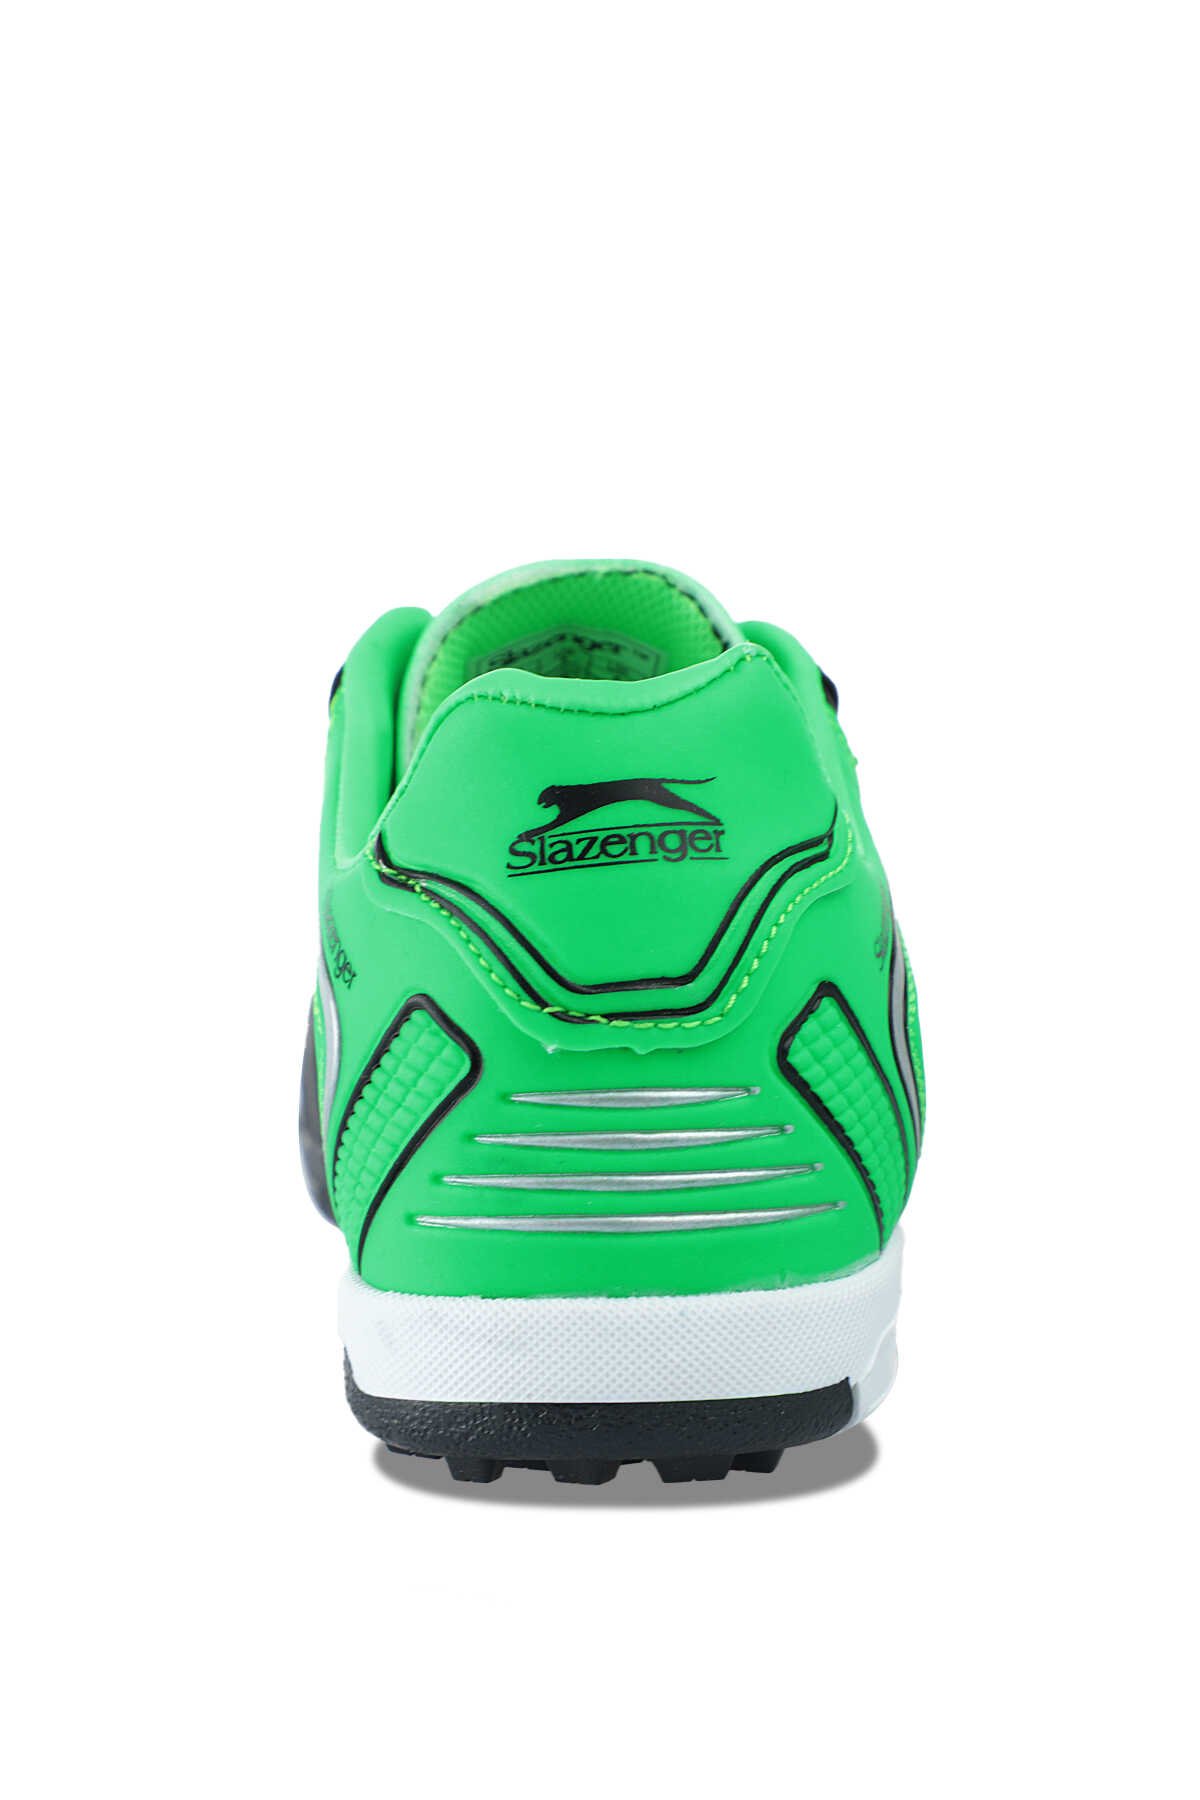 Slazenger HUGO HS Futbol Erkek Çocuk Halı Saha Ayakkabı Siyah / Yeşil